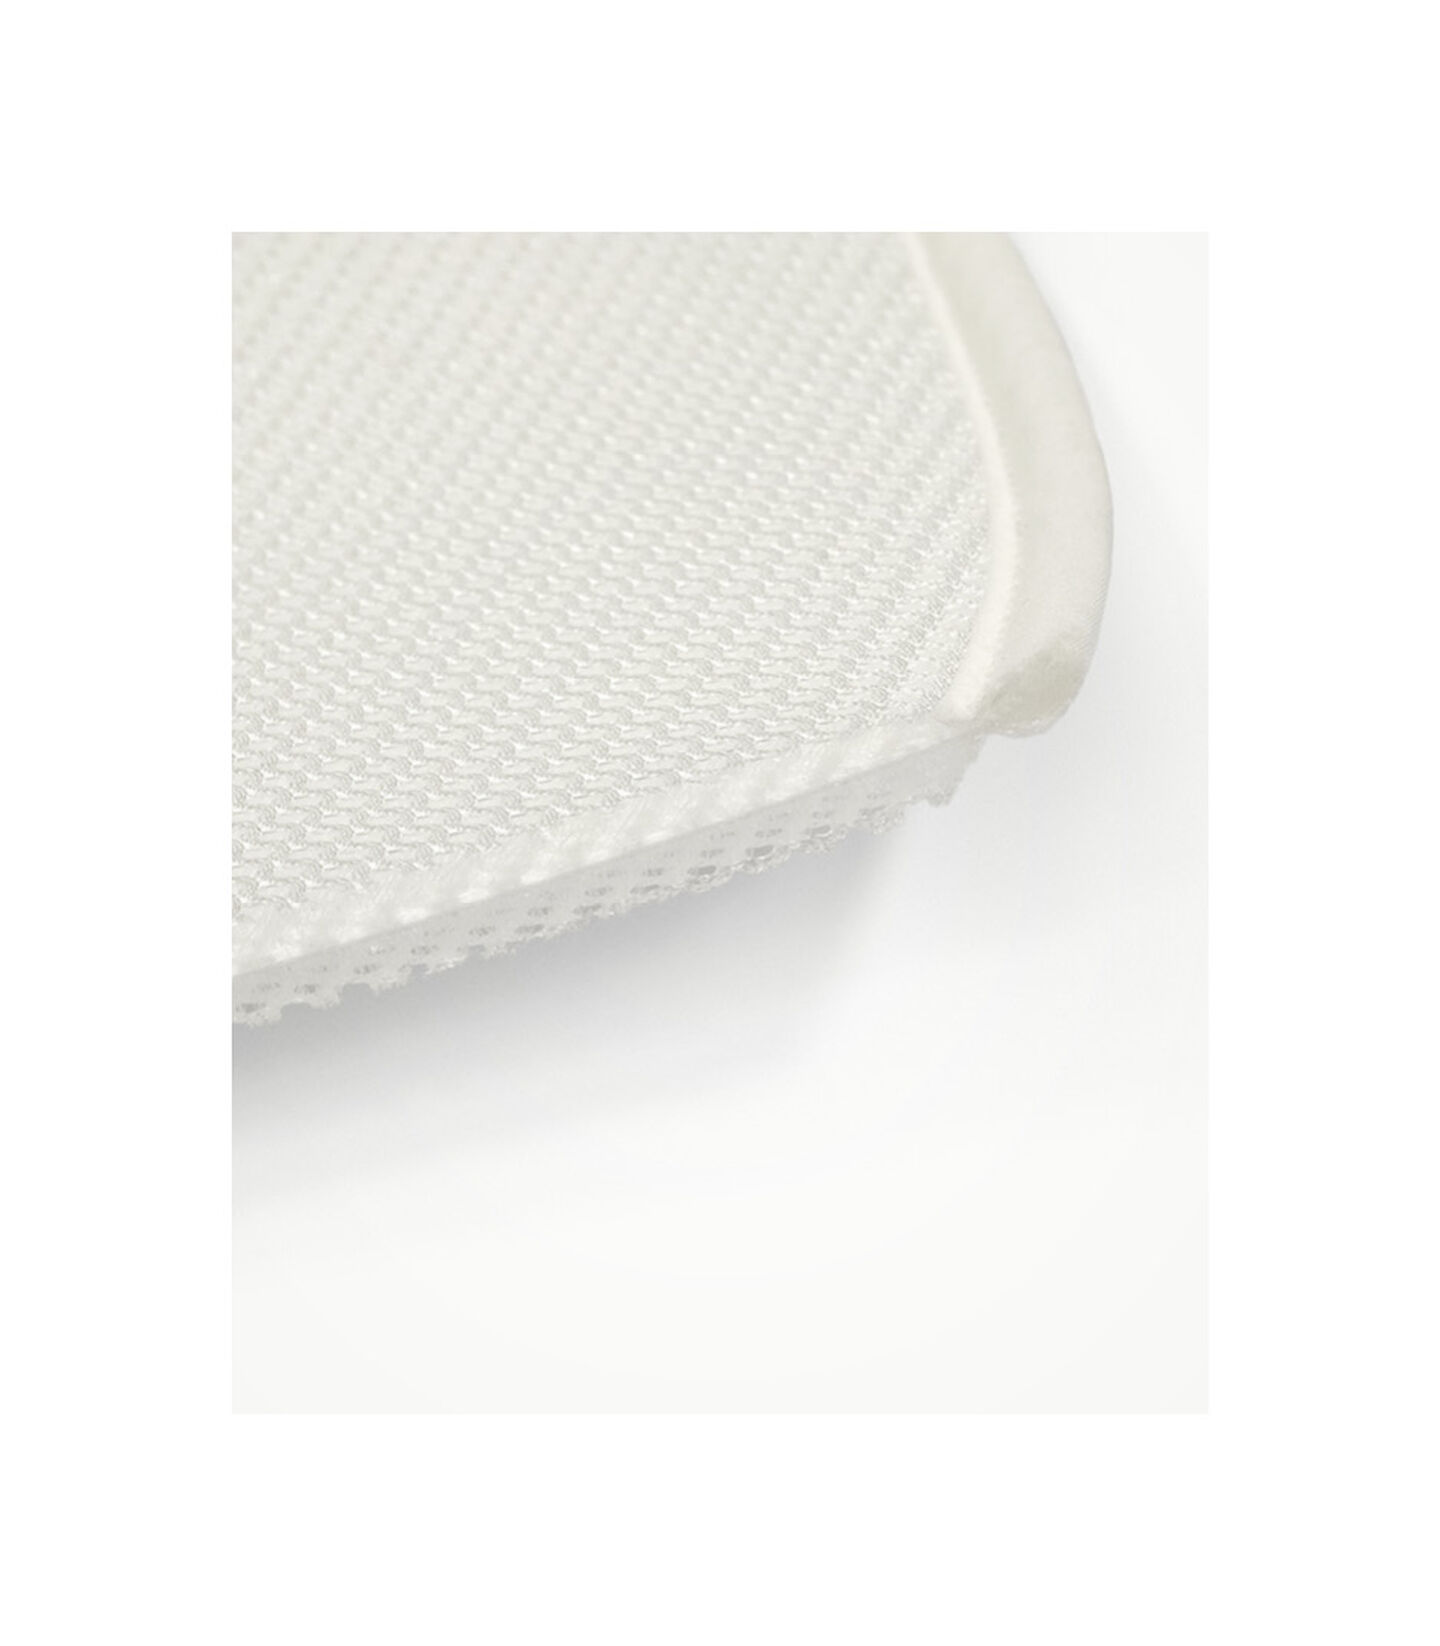 Stokke® Sleepi™ Mini Beskyttelseslagen White, White, mainview view 3